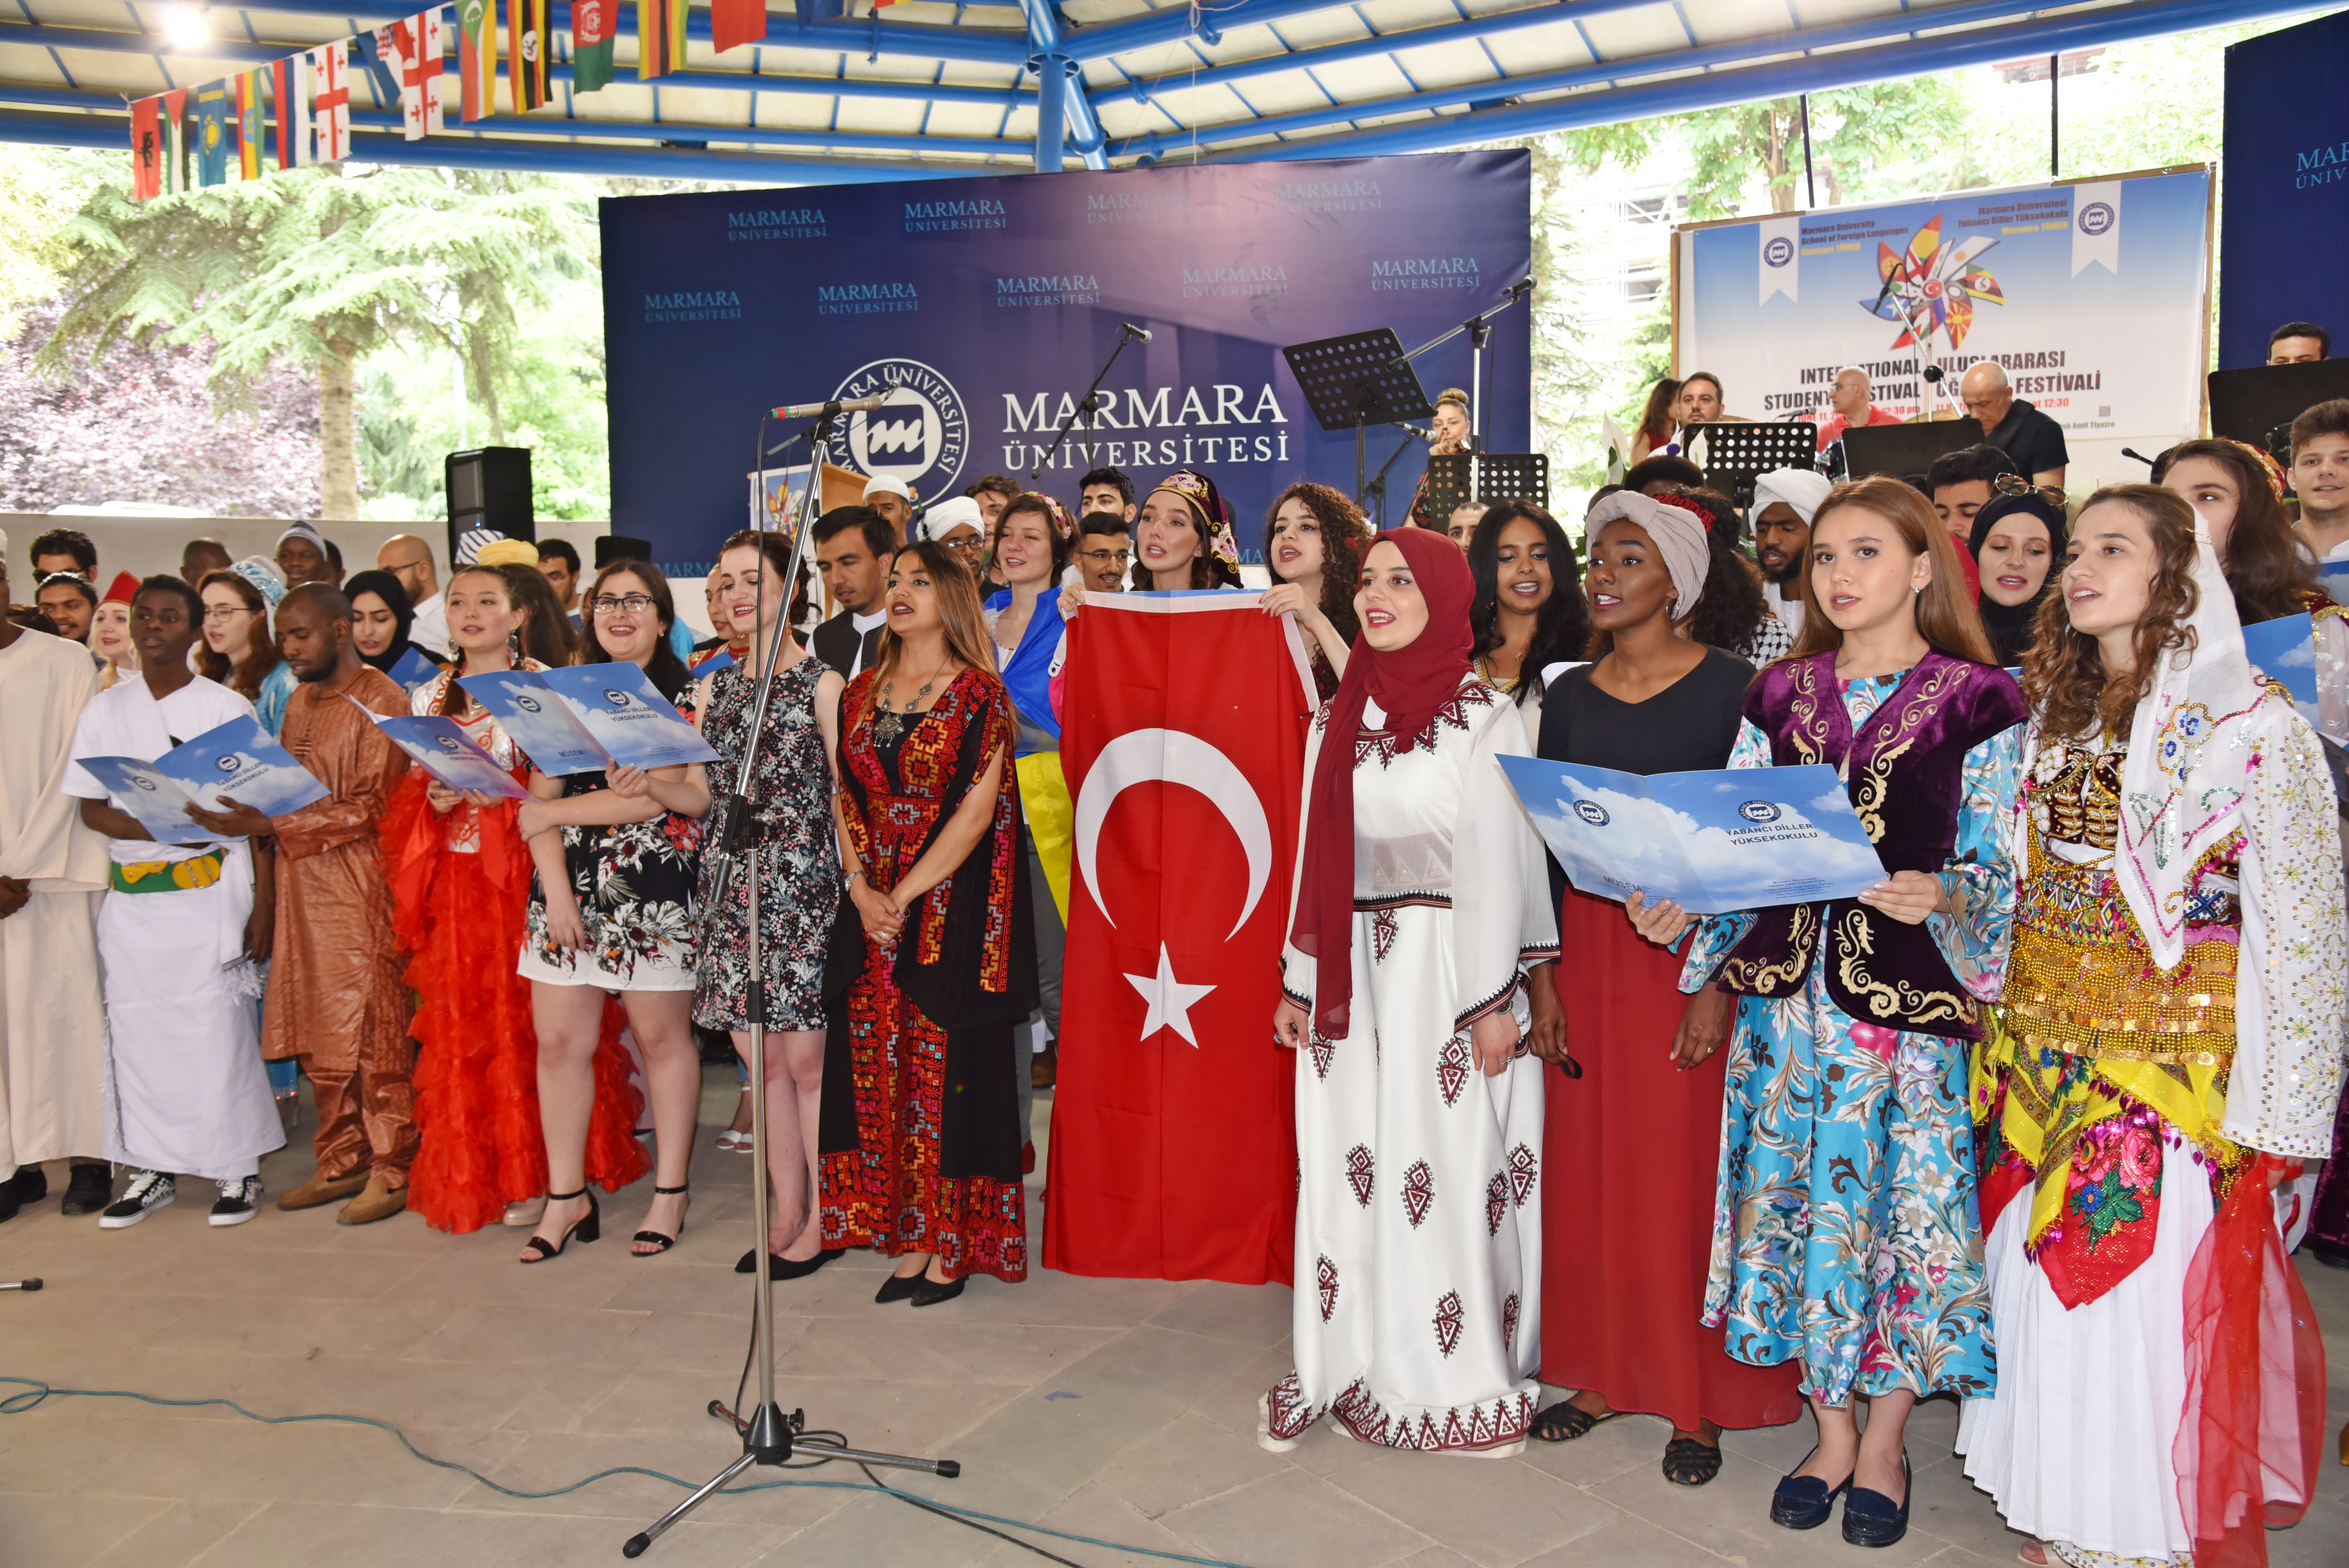 Marmara’da Uluslararası Festival Coşkusu